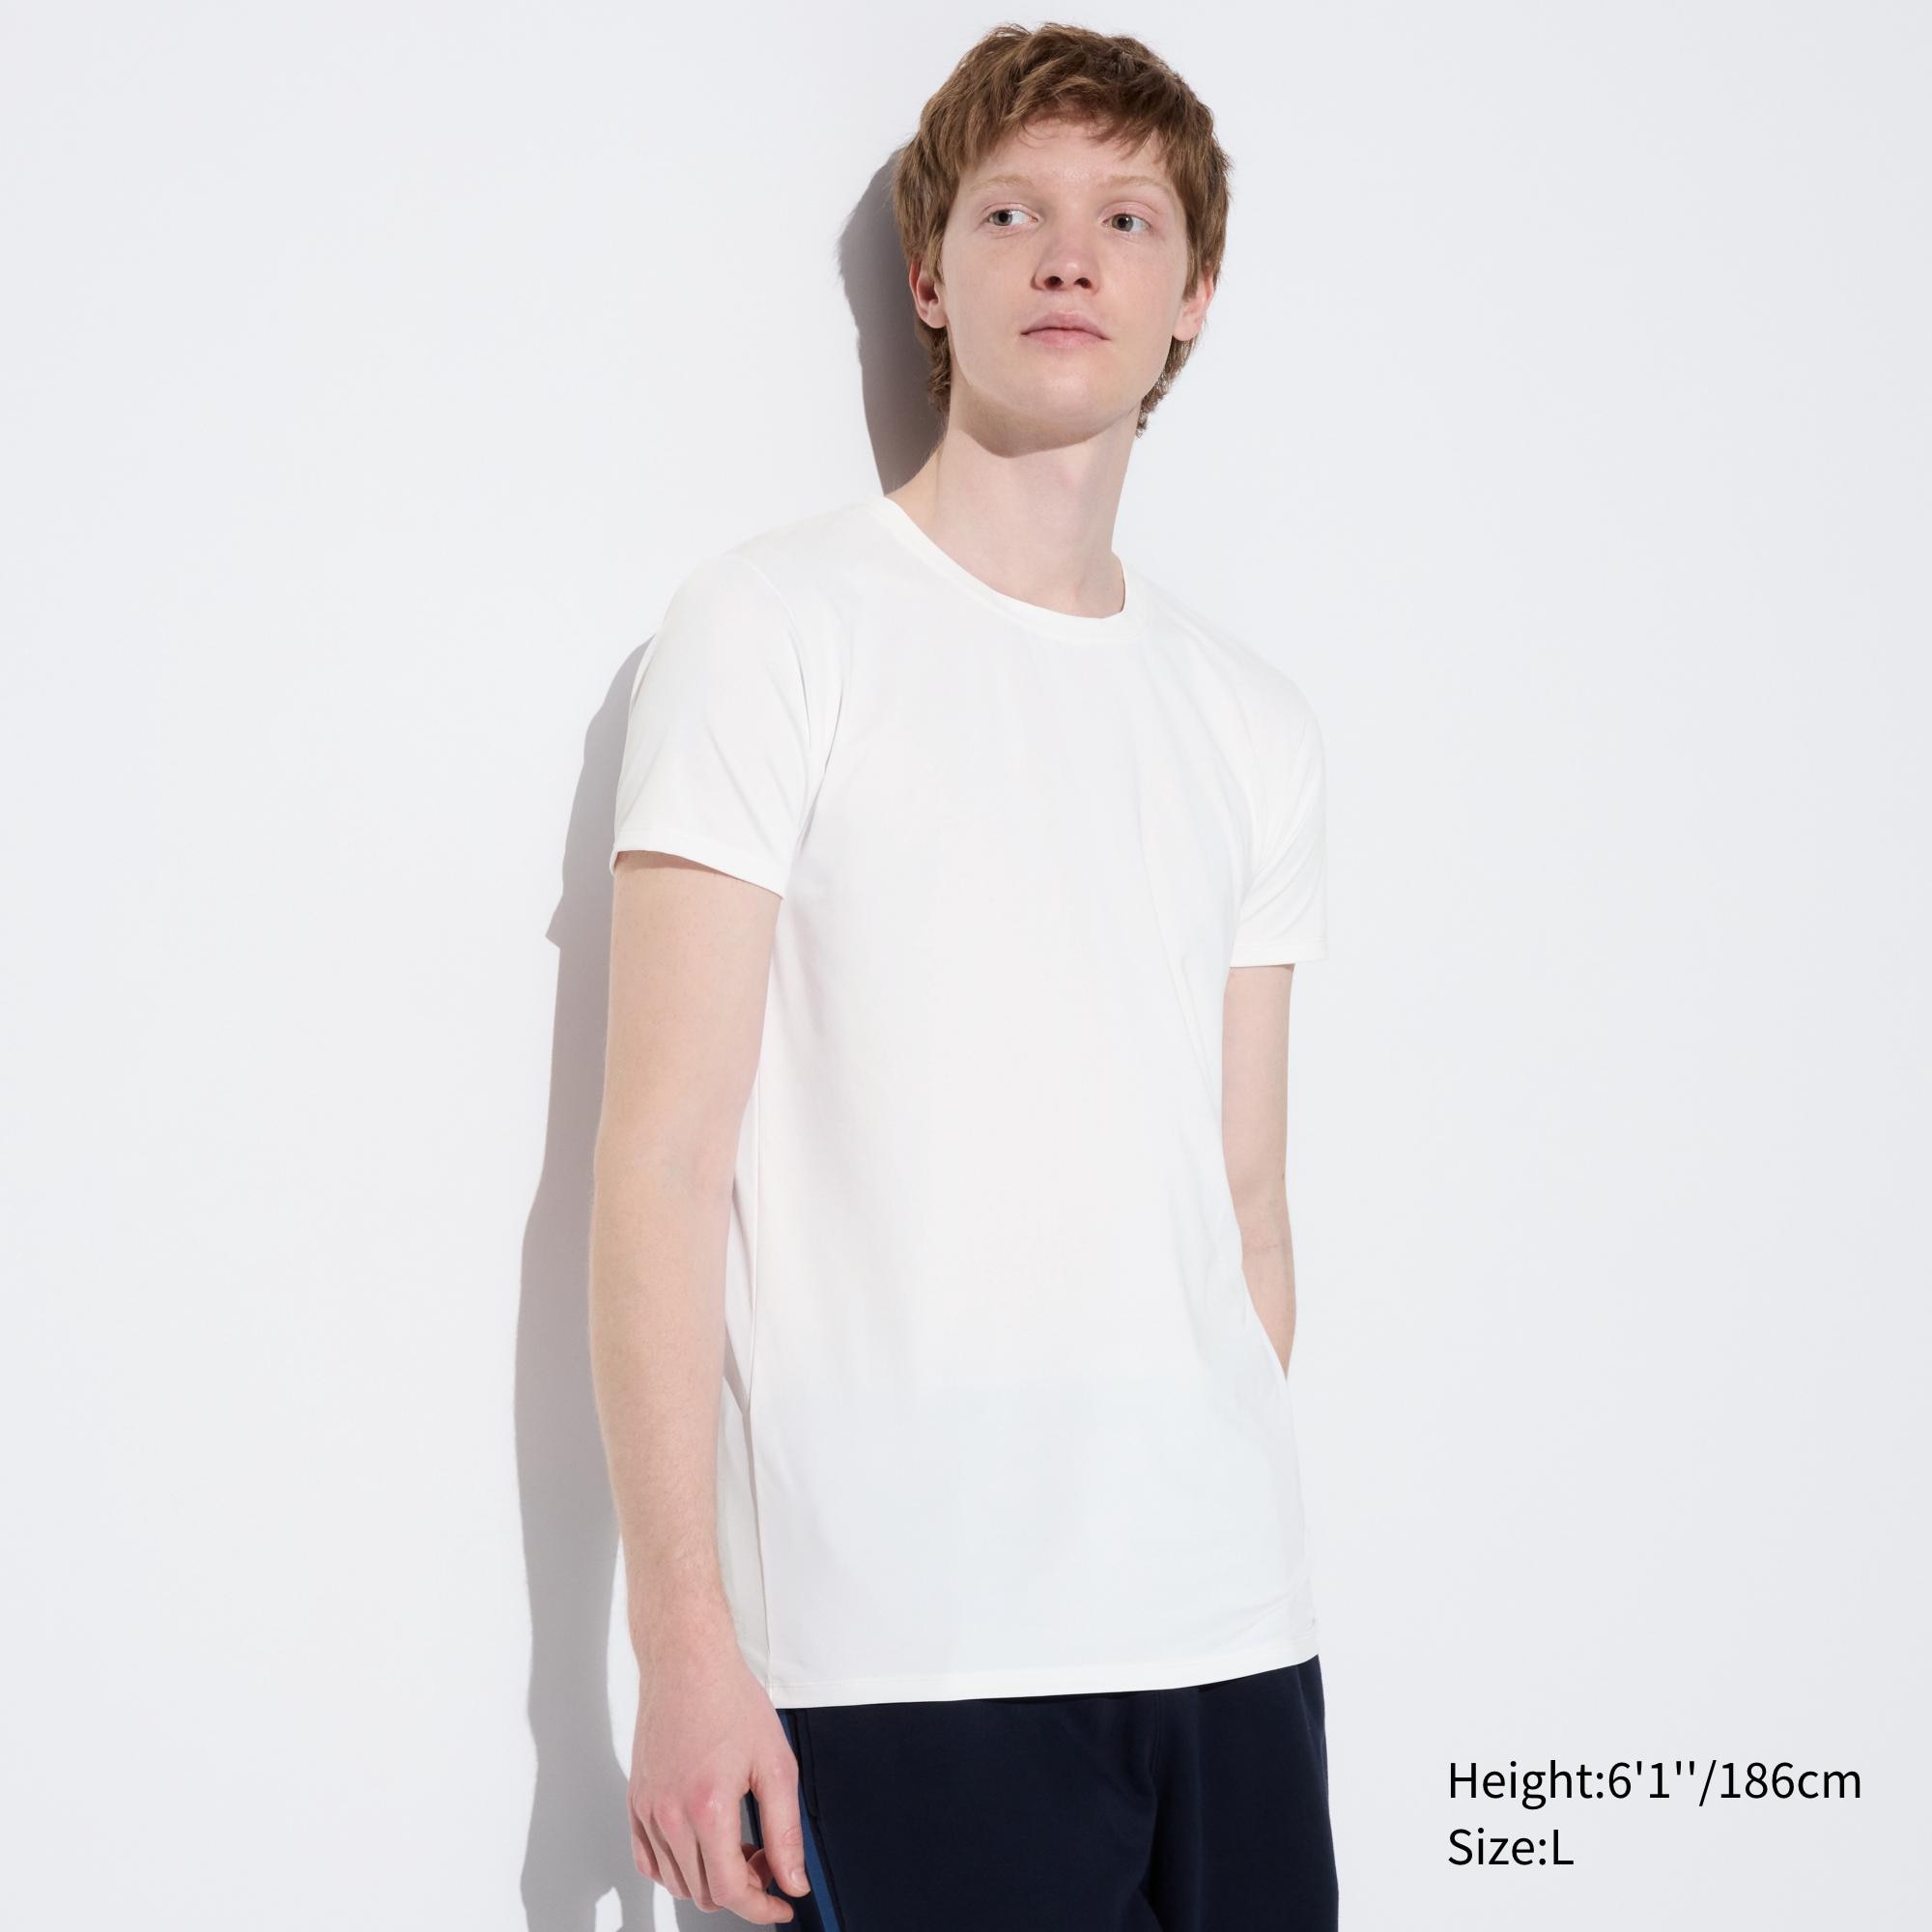 Uniqlo plain white shirt Mens Fashion Tops  Sets Tshirts  Polo Shirts  on Carousell